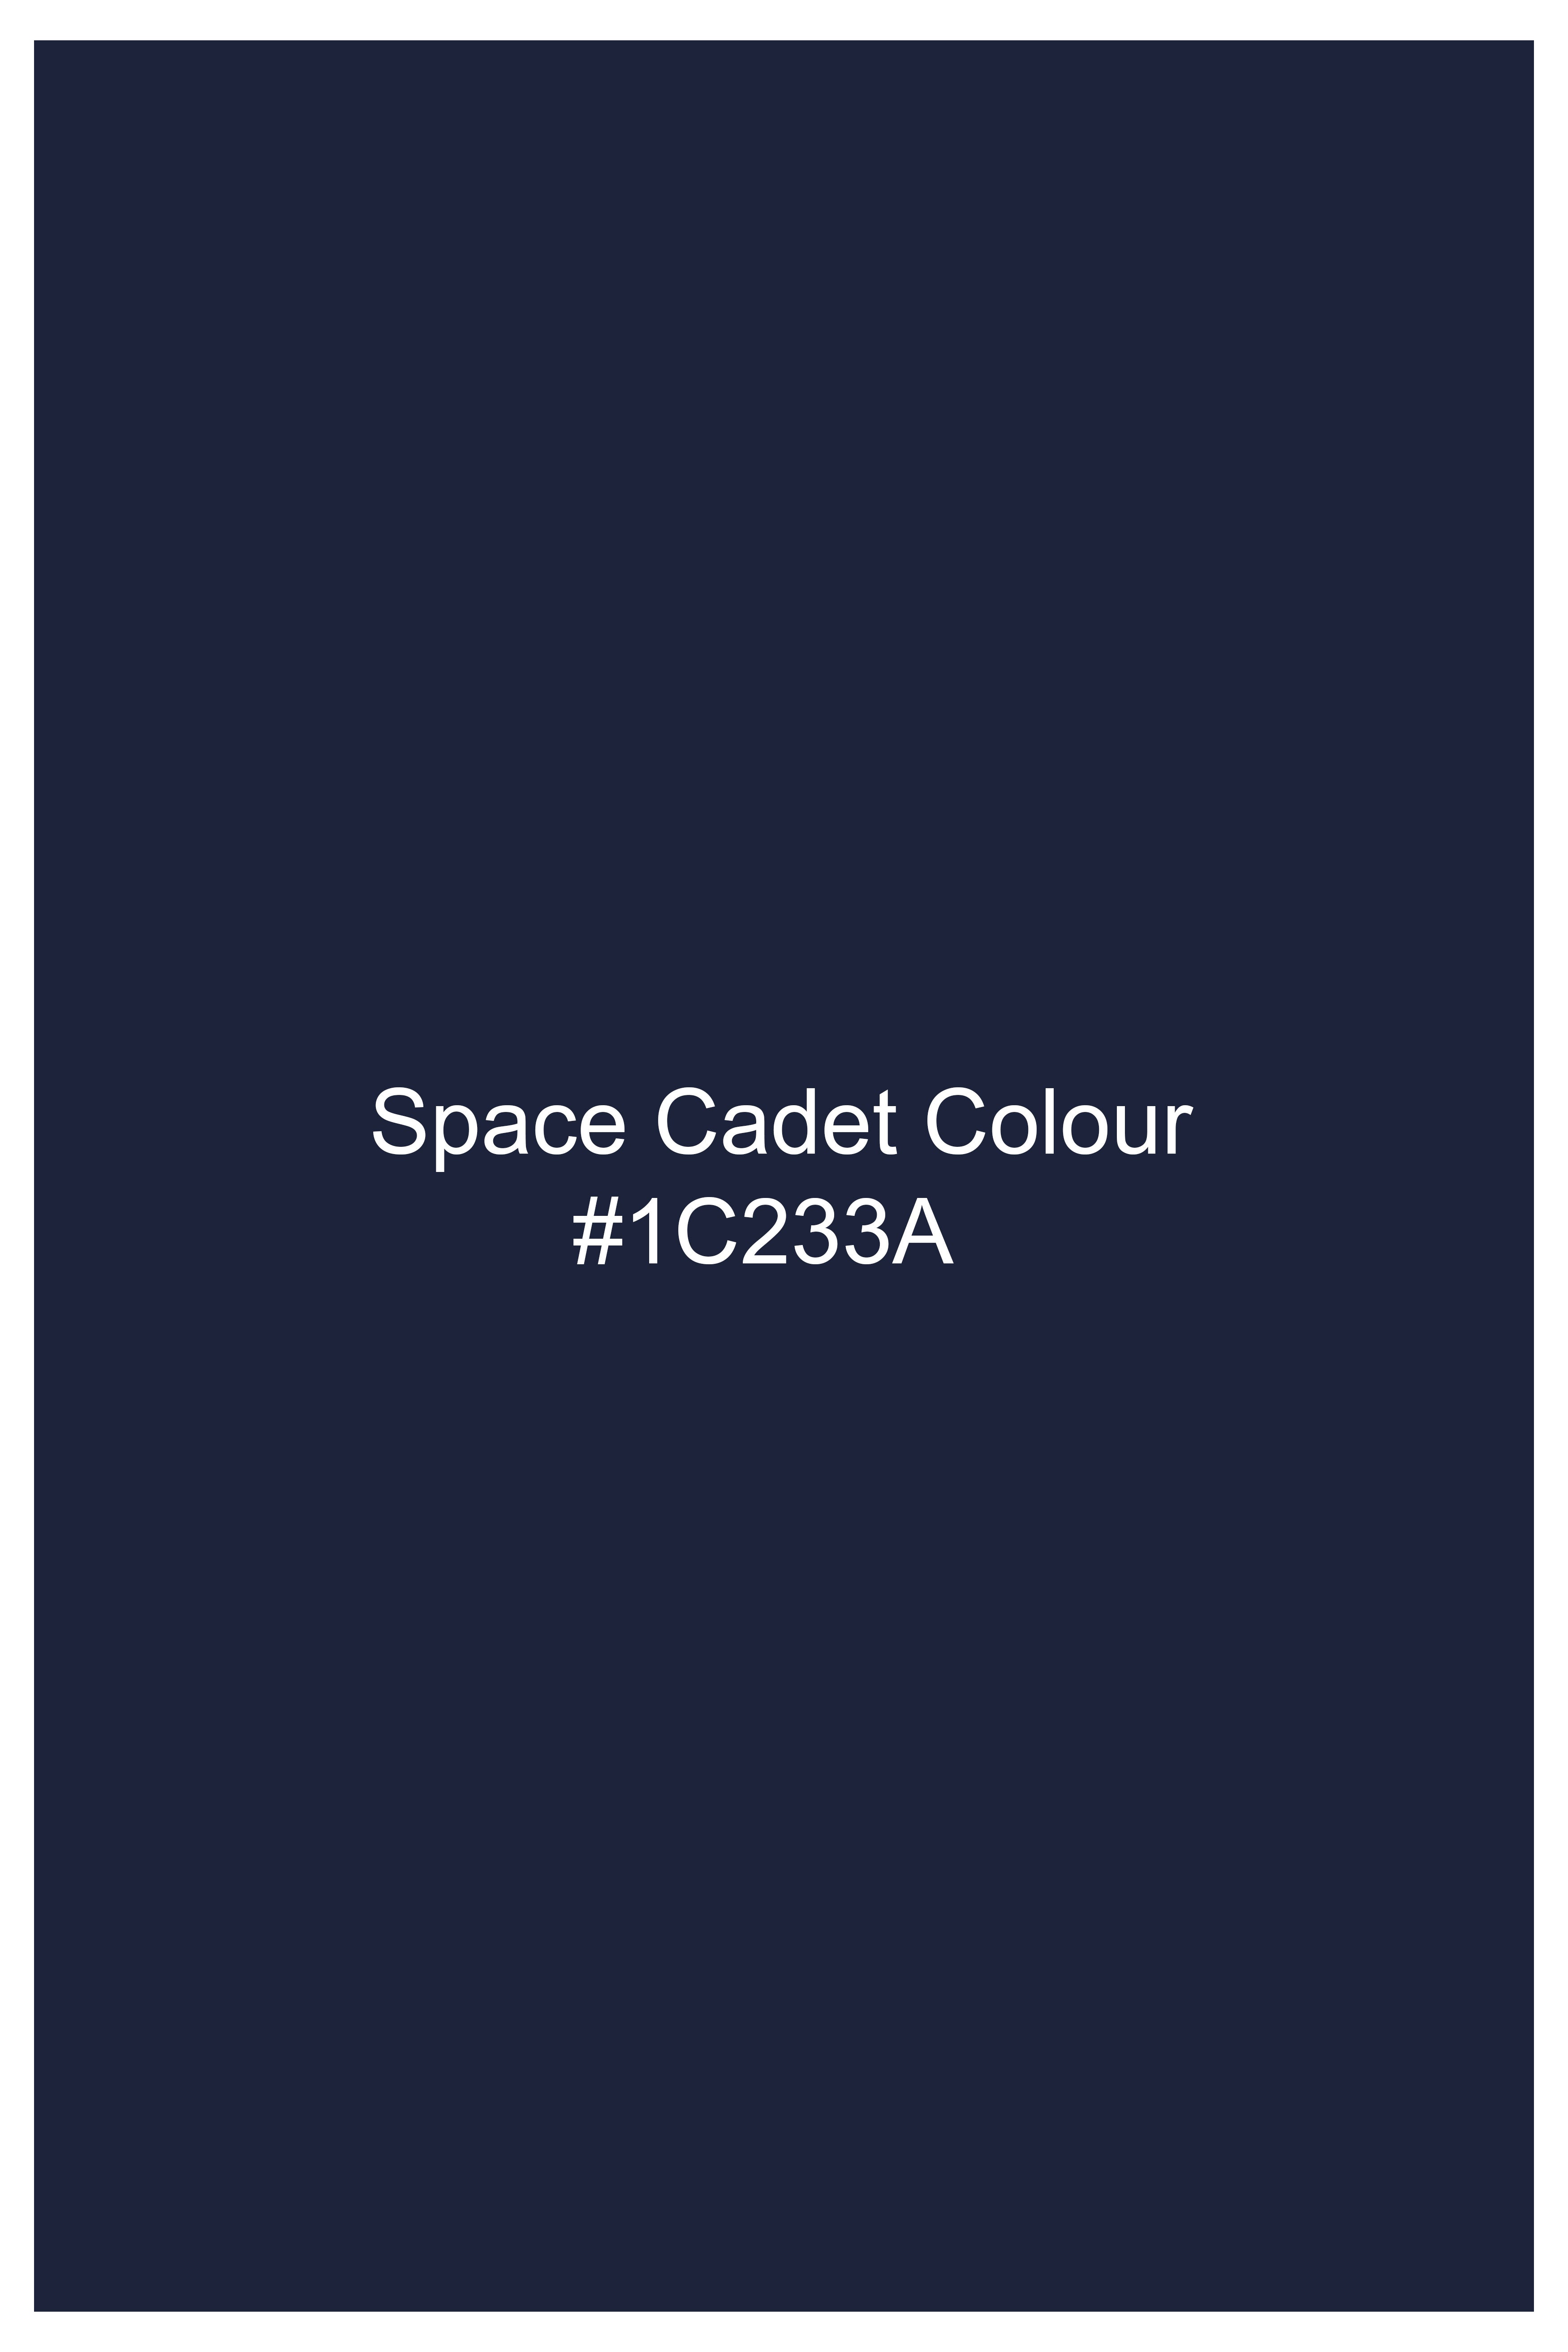 Space Cadet Blue Wool Rich Designer Blazer BL2939-D65-36, BL2939-D65-38, BL2939-D65-40, BL2939-D65-42, BL2939-D65-44, BL2939-D65-46, BL2939-D65-48, BL2939-D65-50, BL2939-D65-52, BL2939-D65-54, BL2939-D65-56, BL2939-D65-58, BL2939-D65-60